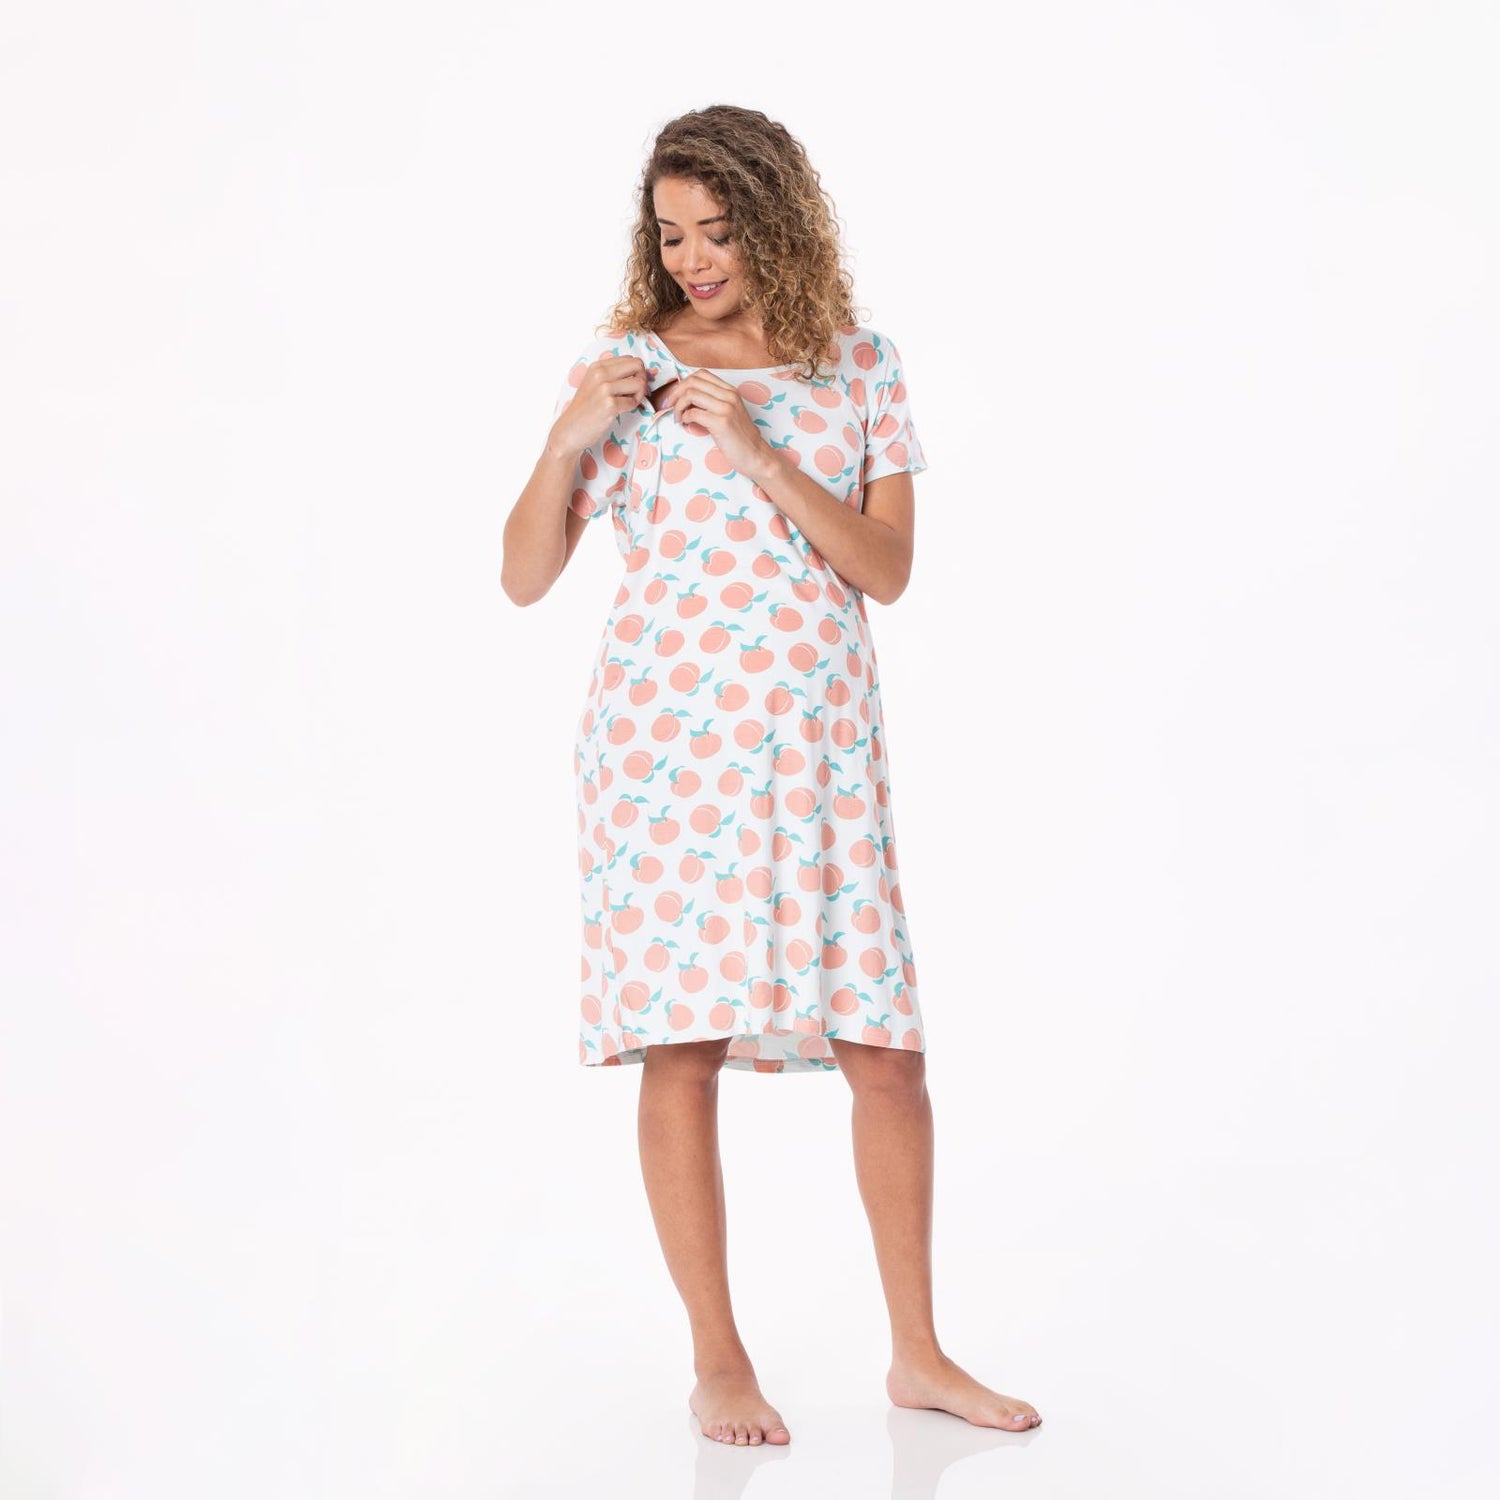 Women's Print Hospital Gown in Fresh Air Peaches